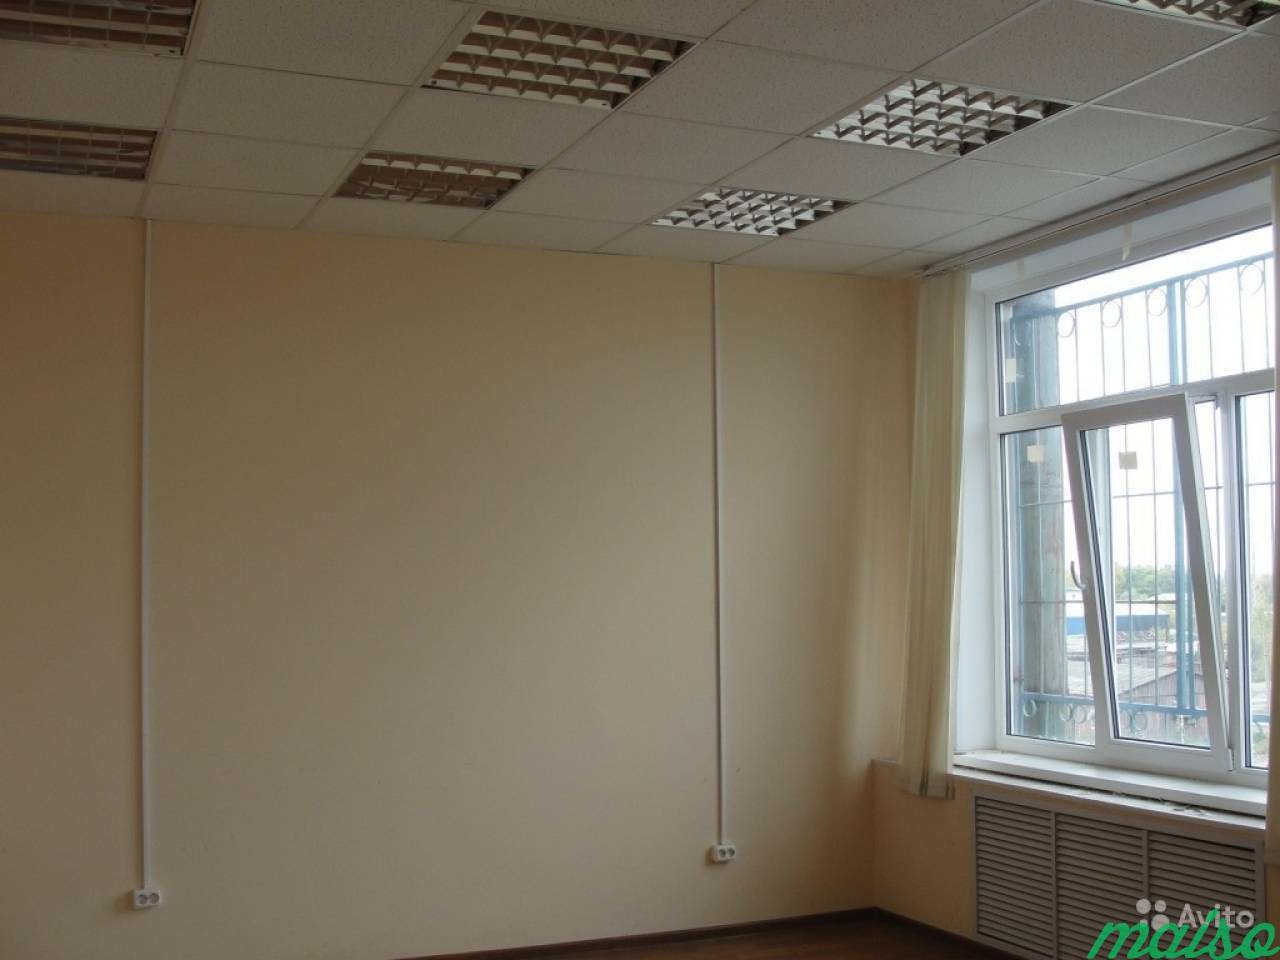 Офисное помещение в Славянке, от 12 м² до 500 м² в Санкт-Петербурге. Фото 4